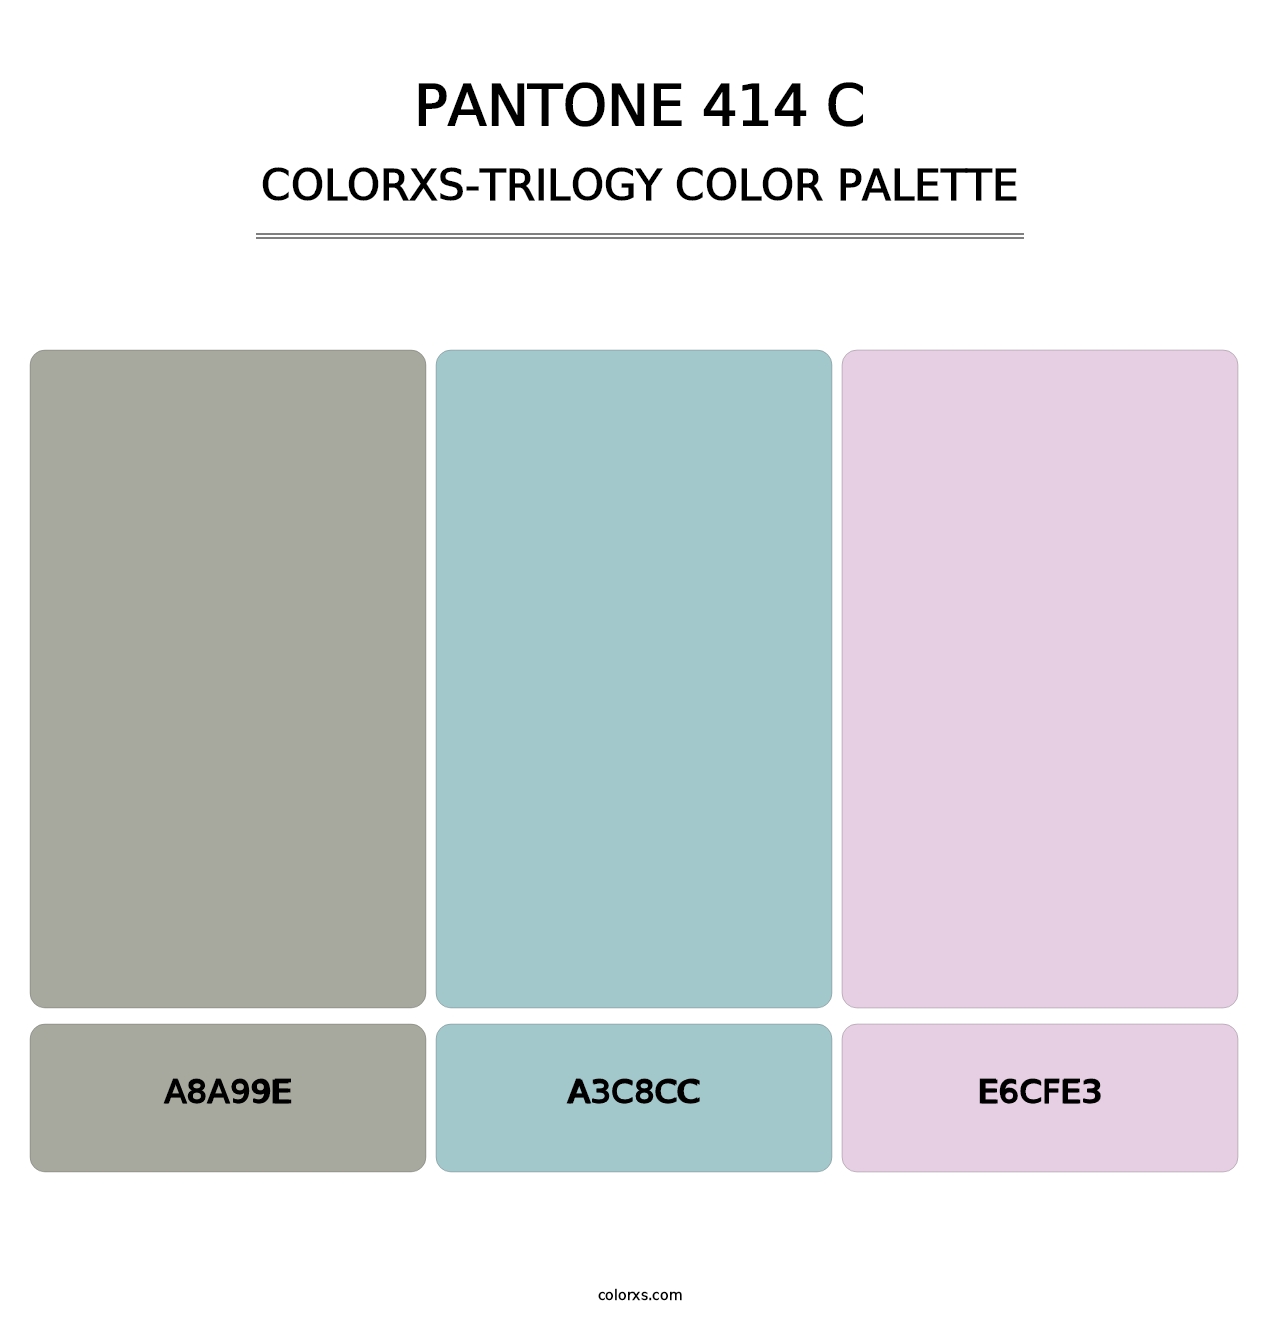 PANTONE 414 C - Colorxs Trilogy Palette